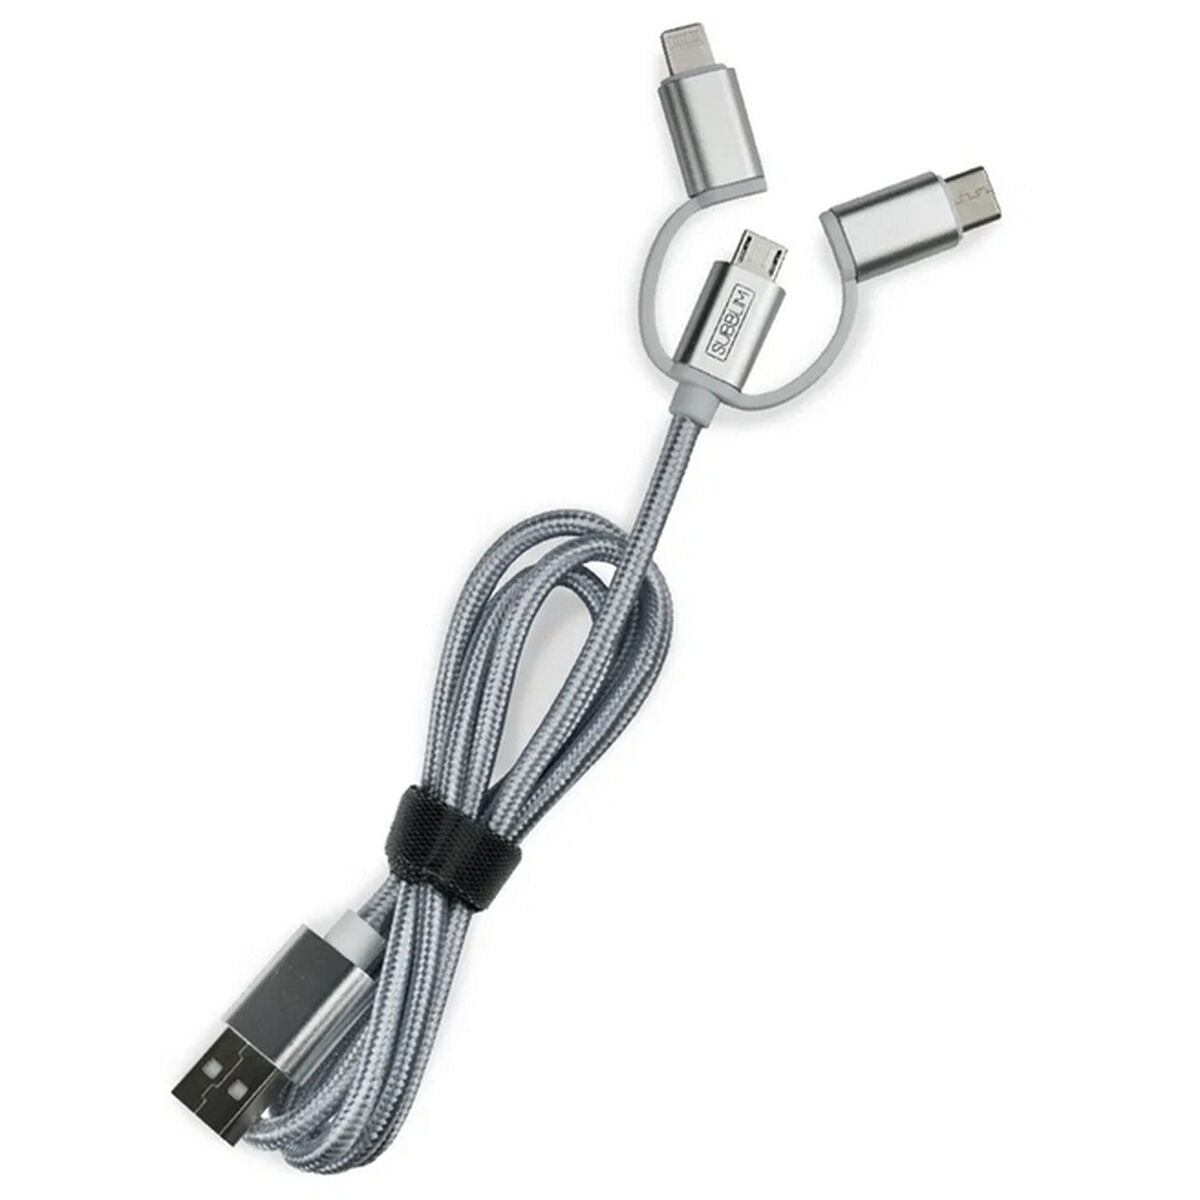 Caricatore di auto USB universale + cavo USB Cublim Cargador Coche 2xusb Allume Caricatore a doppia auto 2.4A + Cavo 3 in 1 argento